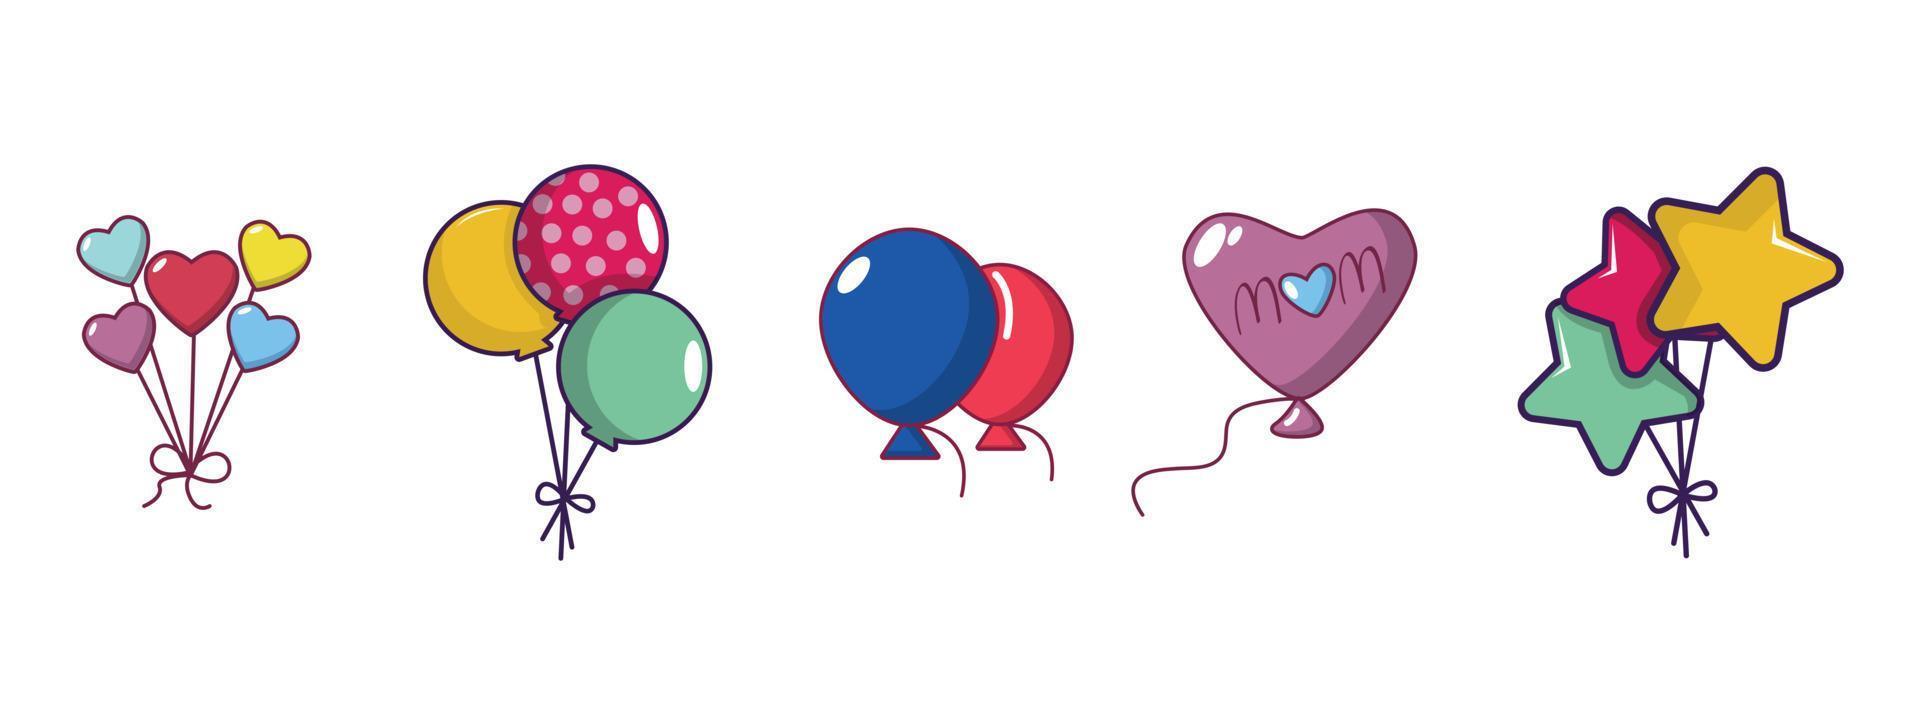 ballons pictogrammenset, cartoon stijl vector